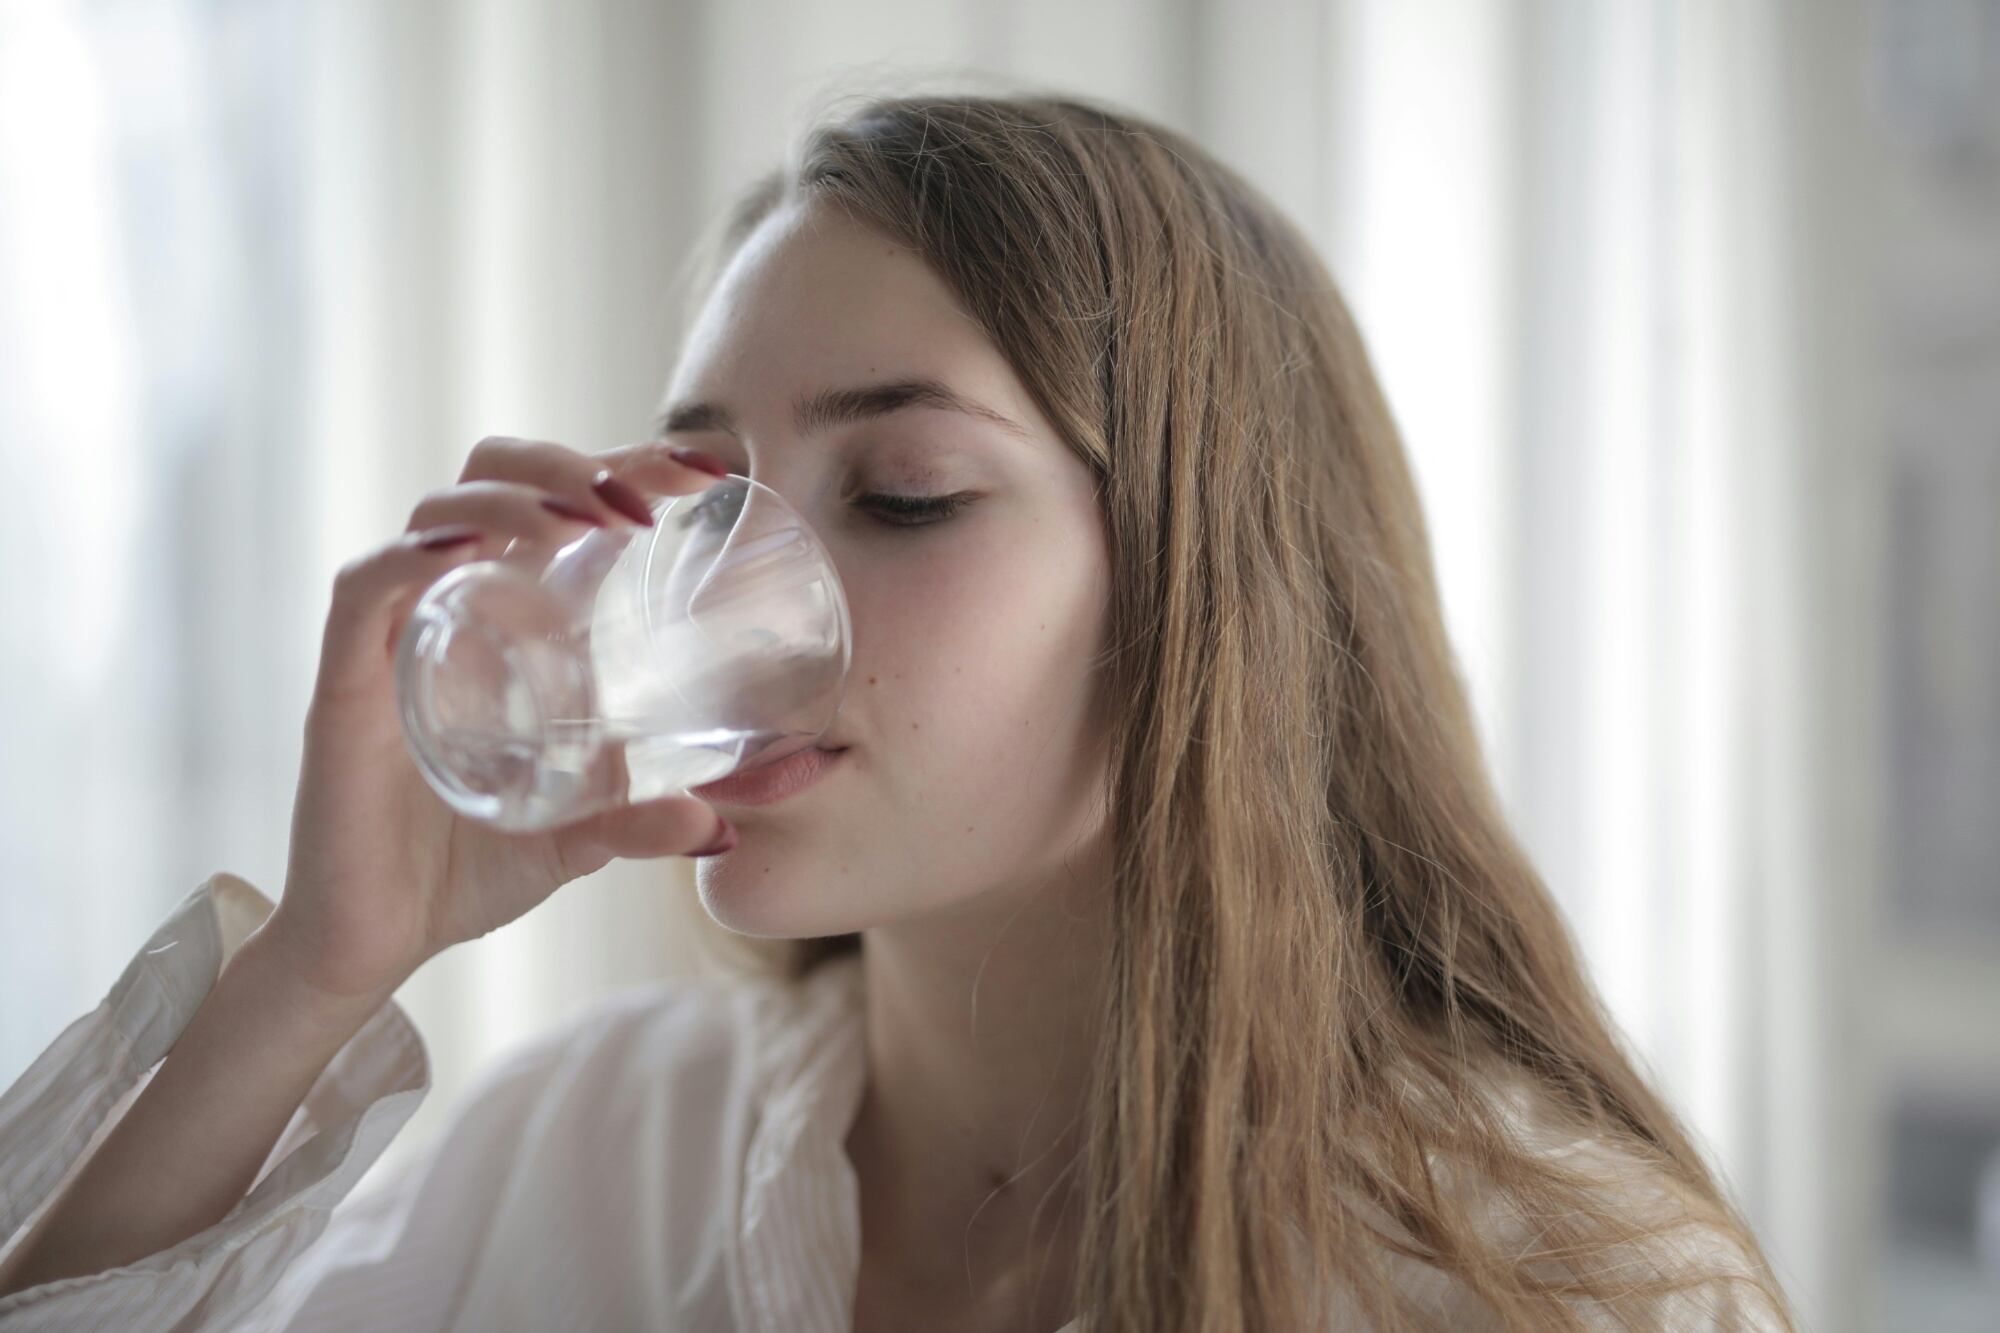 La Universidad de Harvard asegura que, aunque el agua con gas es saludable si se consume con moderación, la mejor opción para la salud sigue siendo el agua mineral